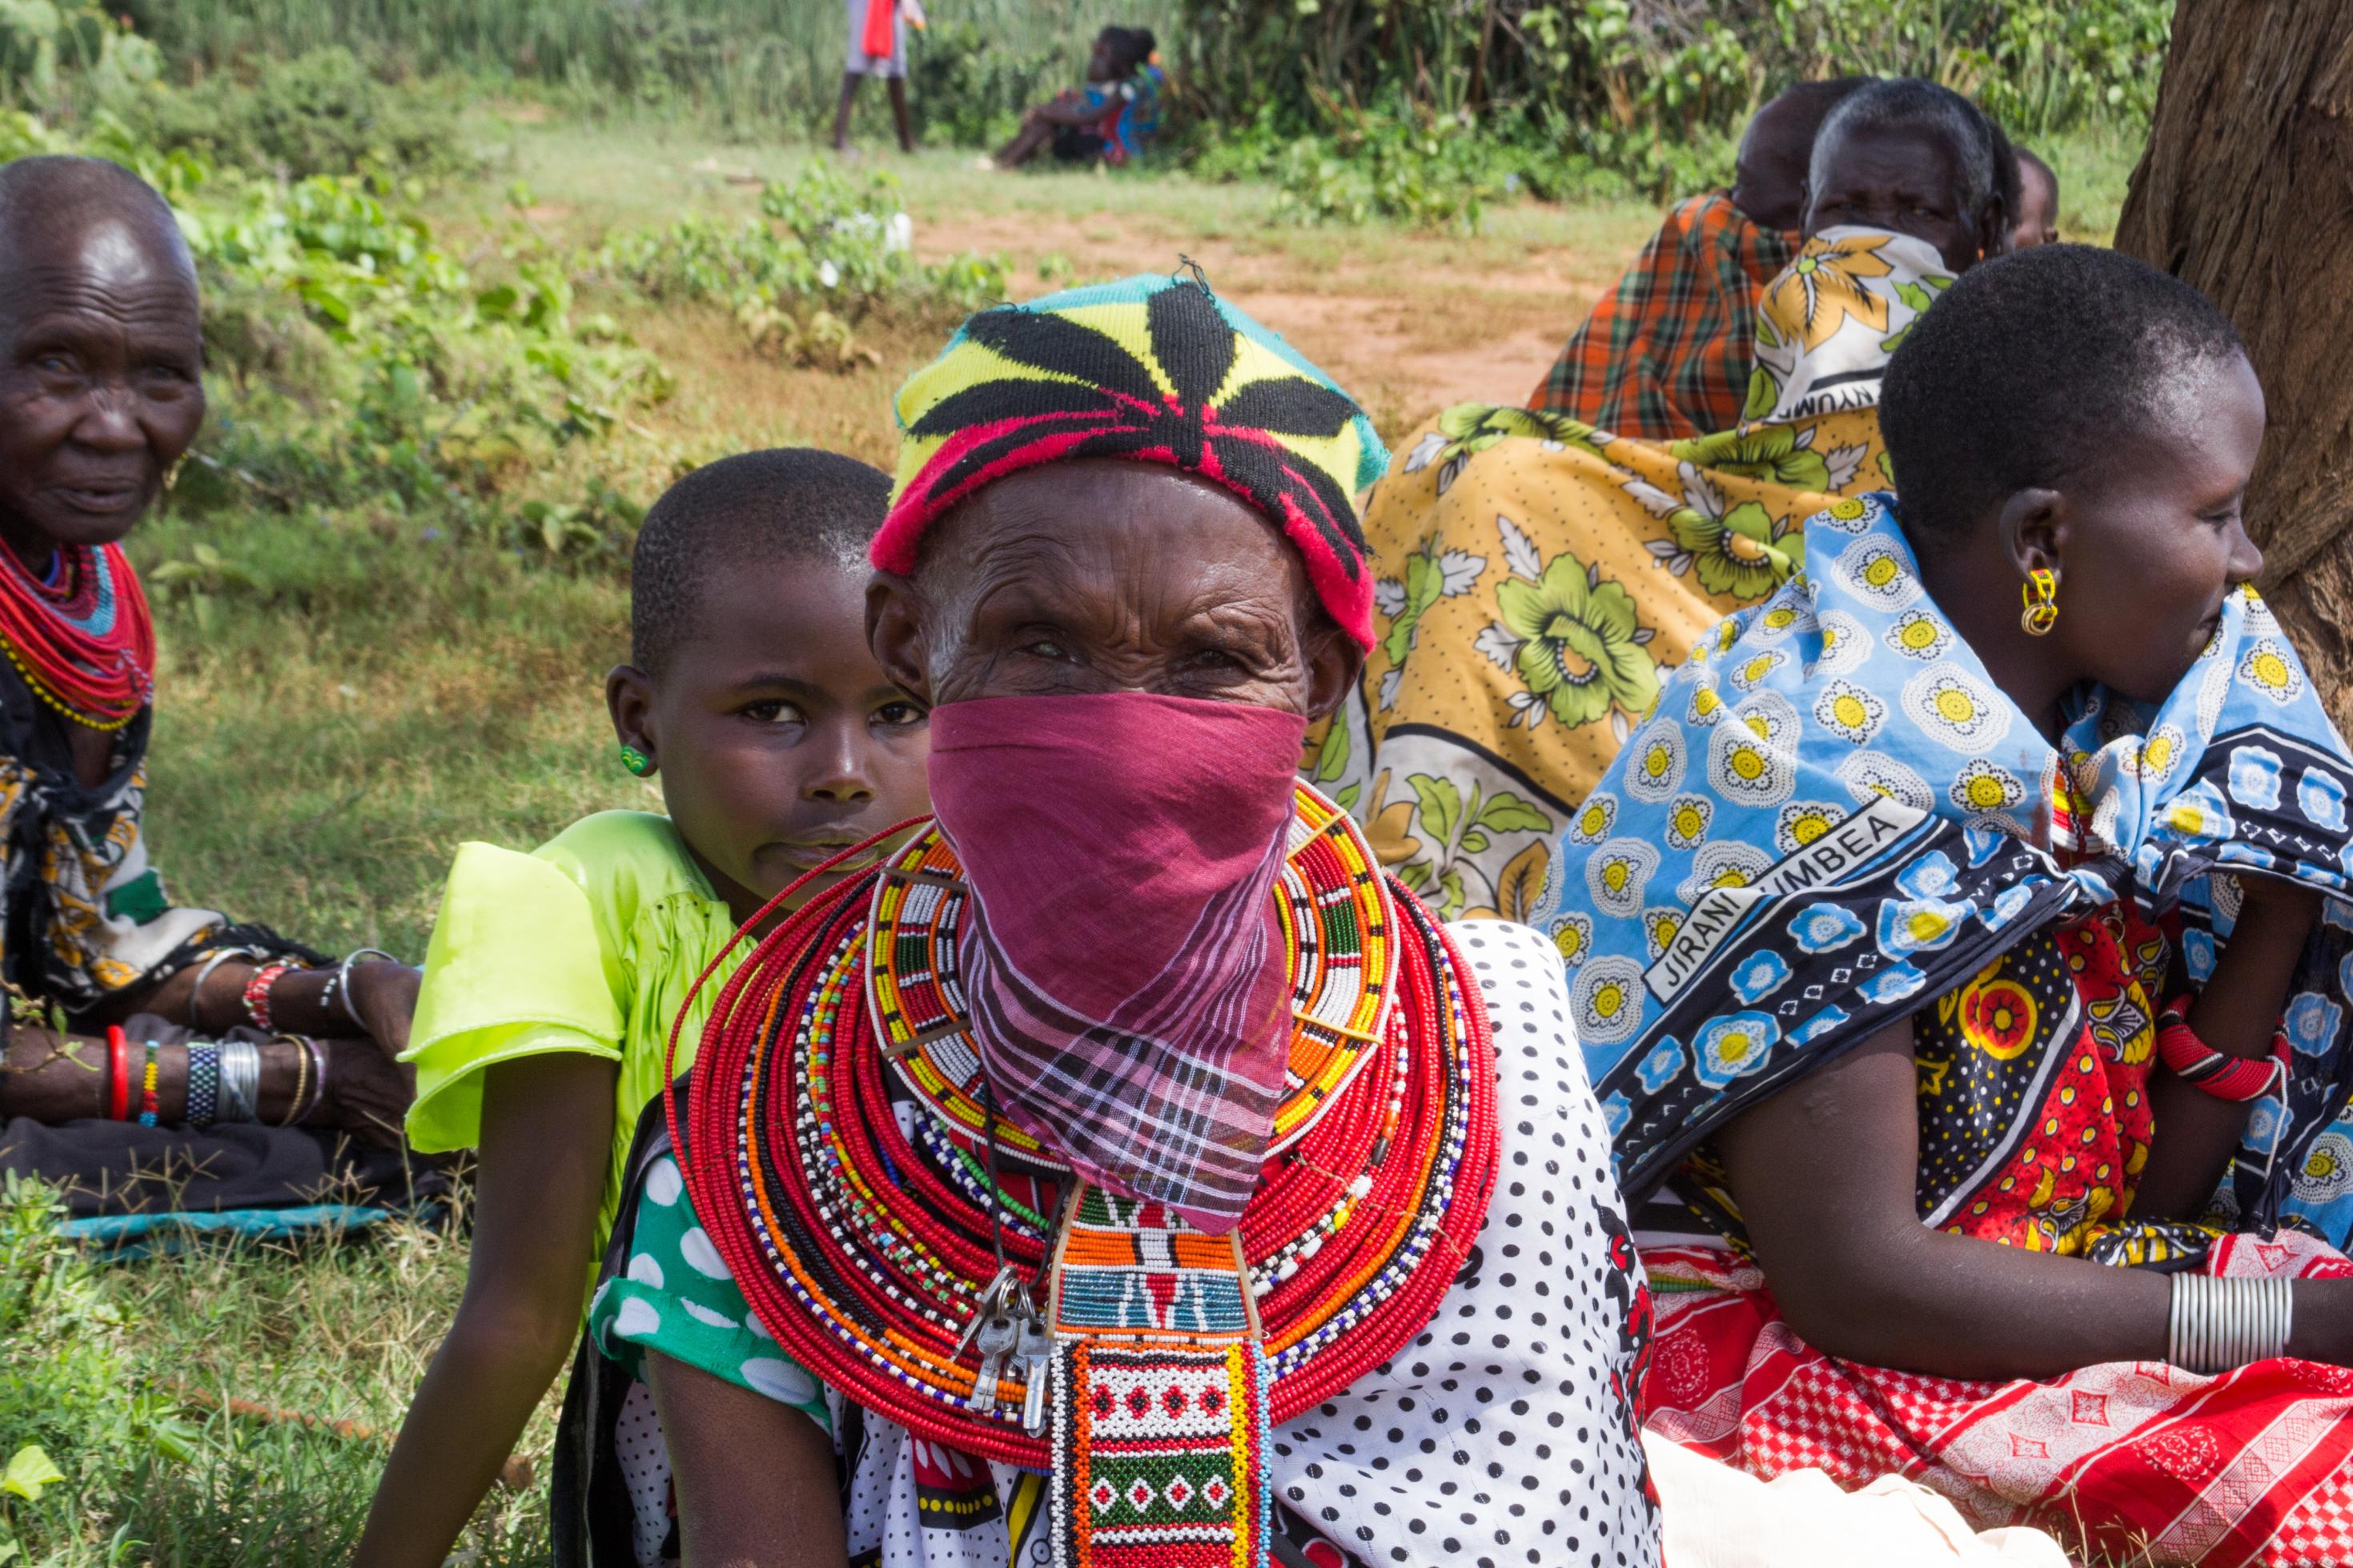 Einige Maasai-Frauen tragen mit Gesichtsmasken. Im Bild ist eine, die zu einer violetten Gesichtsmaske ein Kopftuch mit einer Cannabis-Pflanze trägt. Bisher gab es in der Region noch keine bekannten Infektionsfälle.